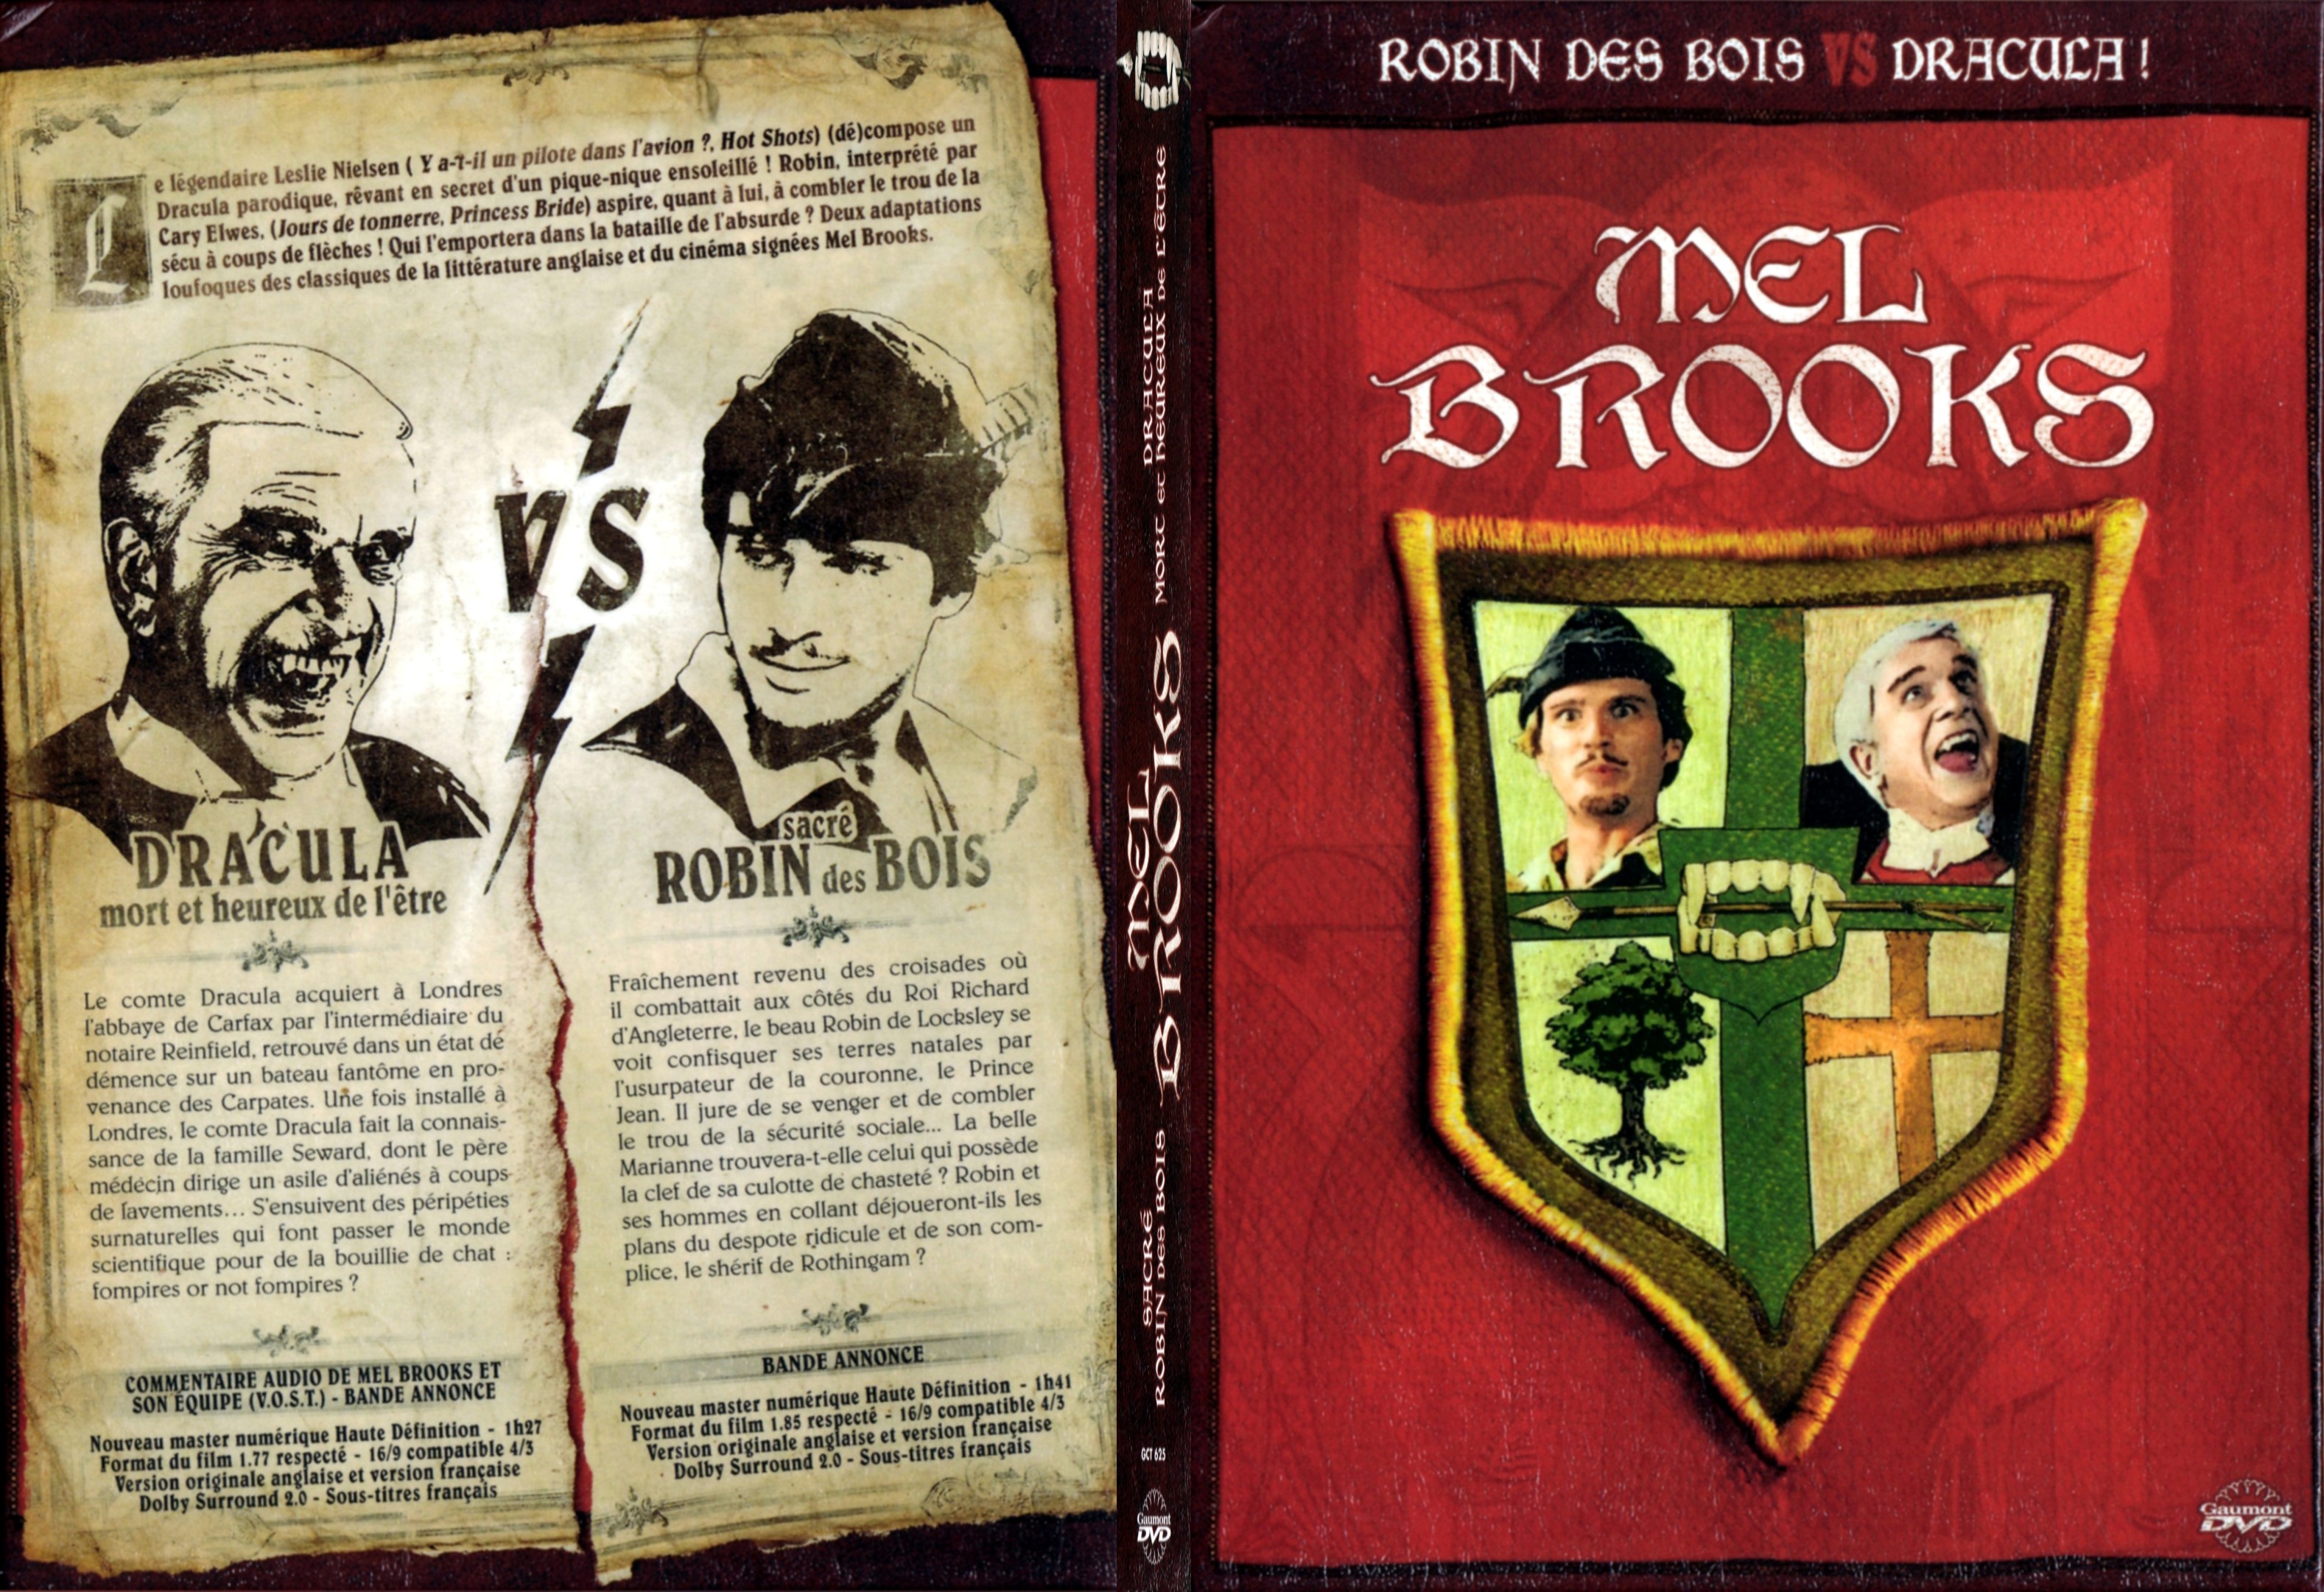 Jaquette DVD Sacr Robin des Bois + Dracula mort et heureux de l